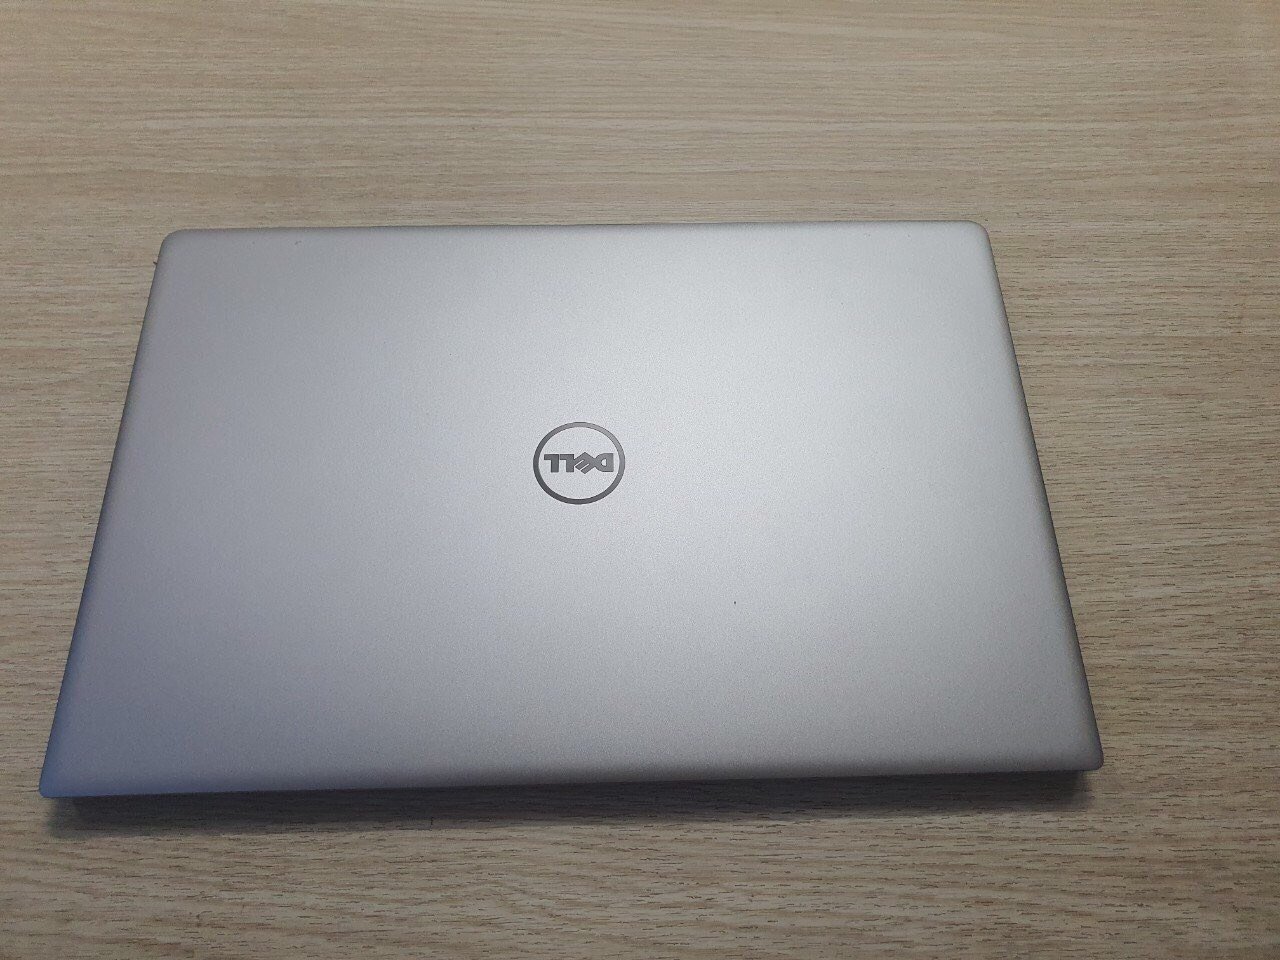 Laptop Dell chính hãng giá rẻ tại Lê Nguyễn PC, cấu hình i5, i7, laptop đồ họa - Ảnh 2